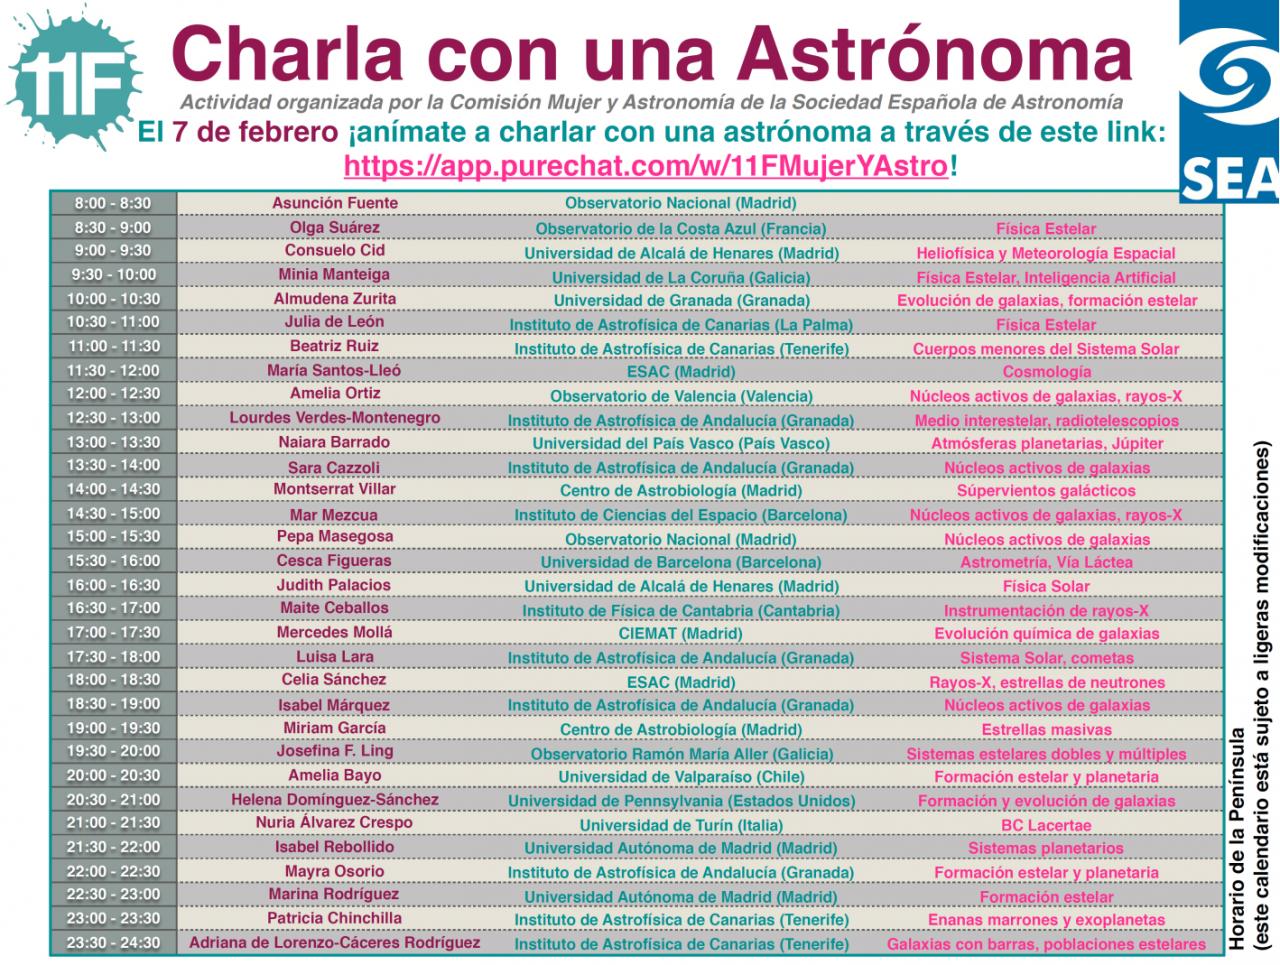 Cartel de la actividad "Charla con una Astrónoma" organizado por la Sociedad Española de Astronomía. 